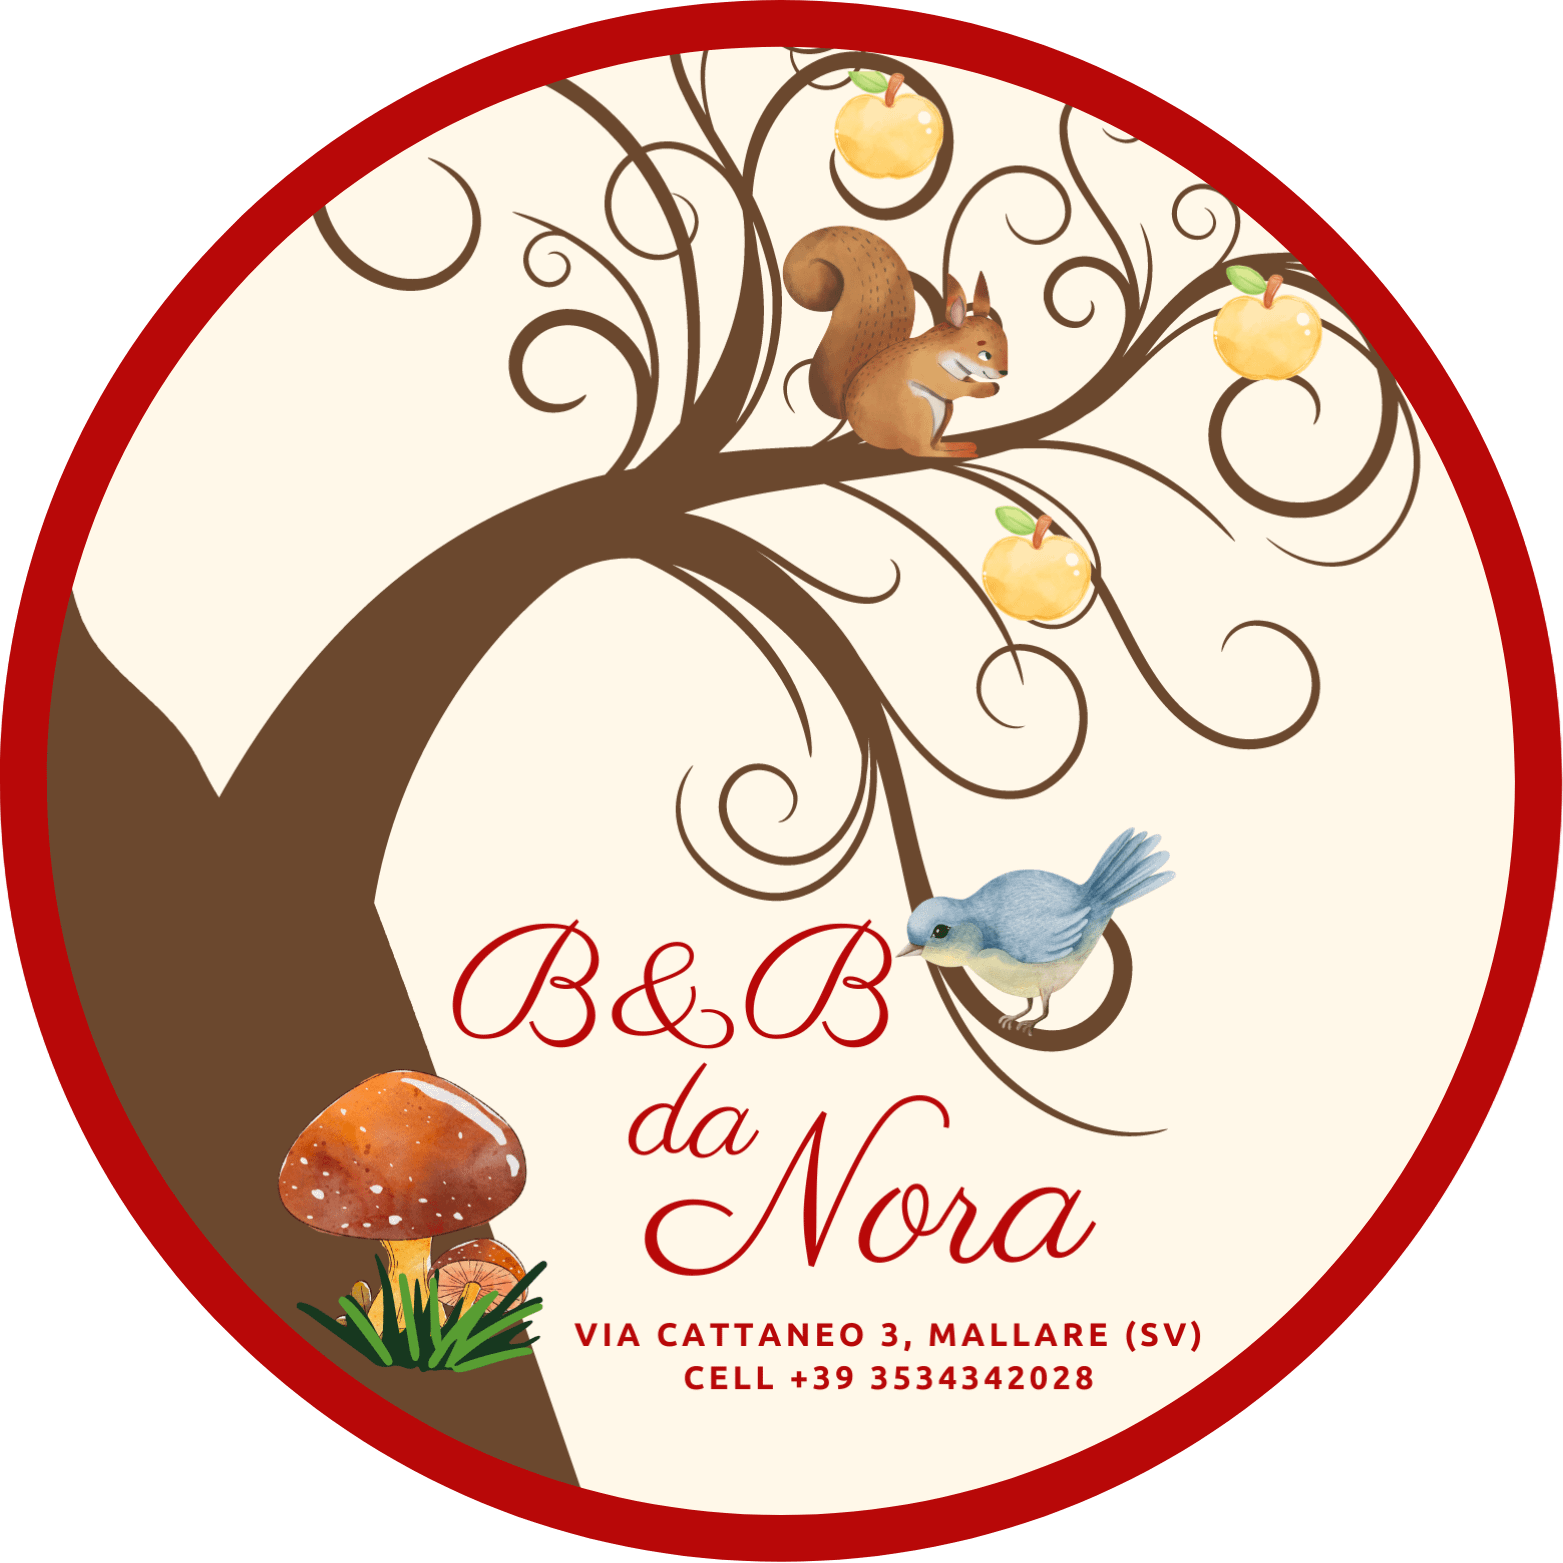 B&B Da Nora